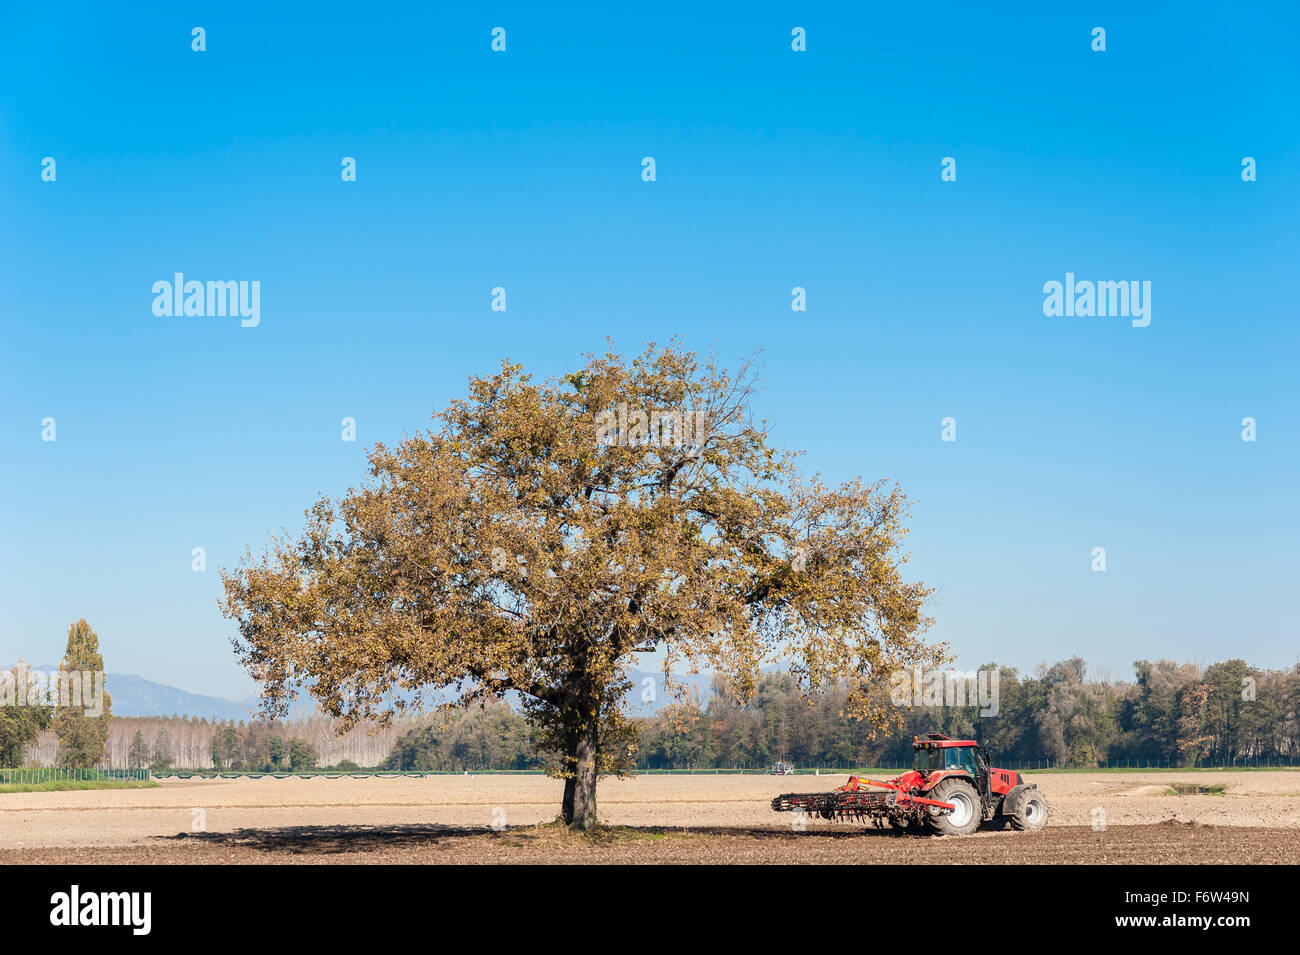 El paisaje agrícola con un árbol y tractor arando el campo con rastra. Foto de stock